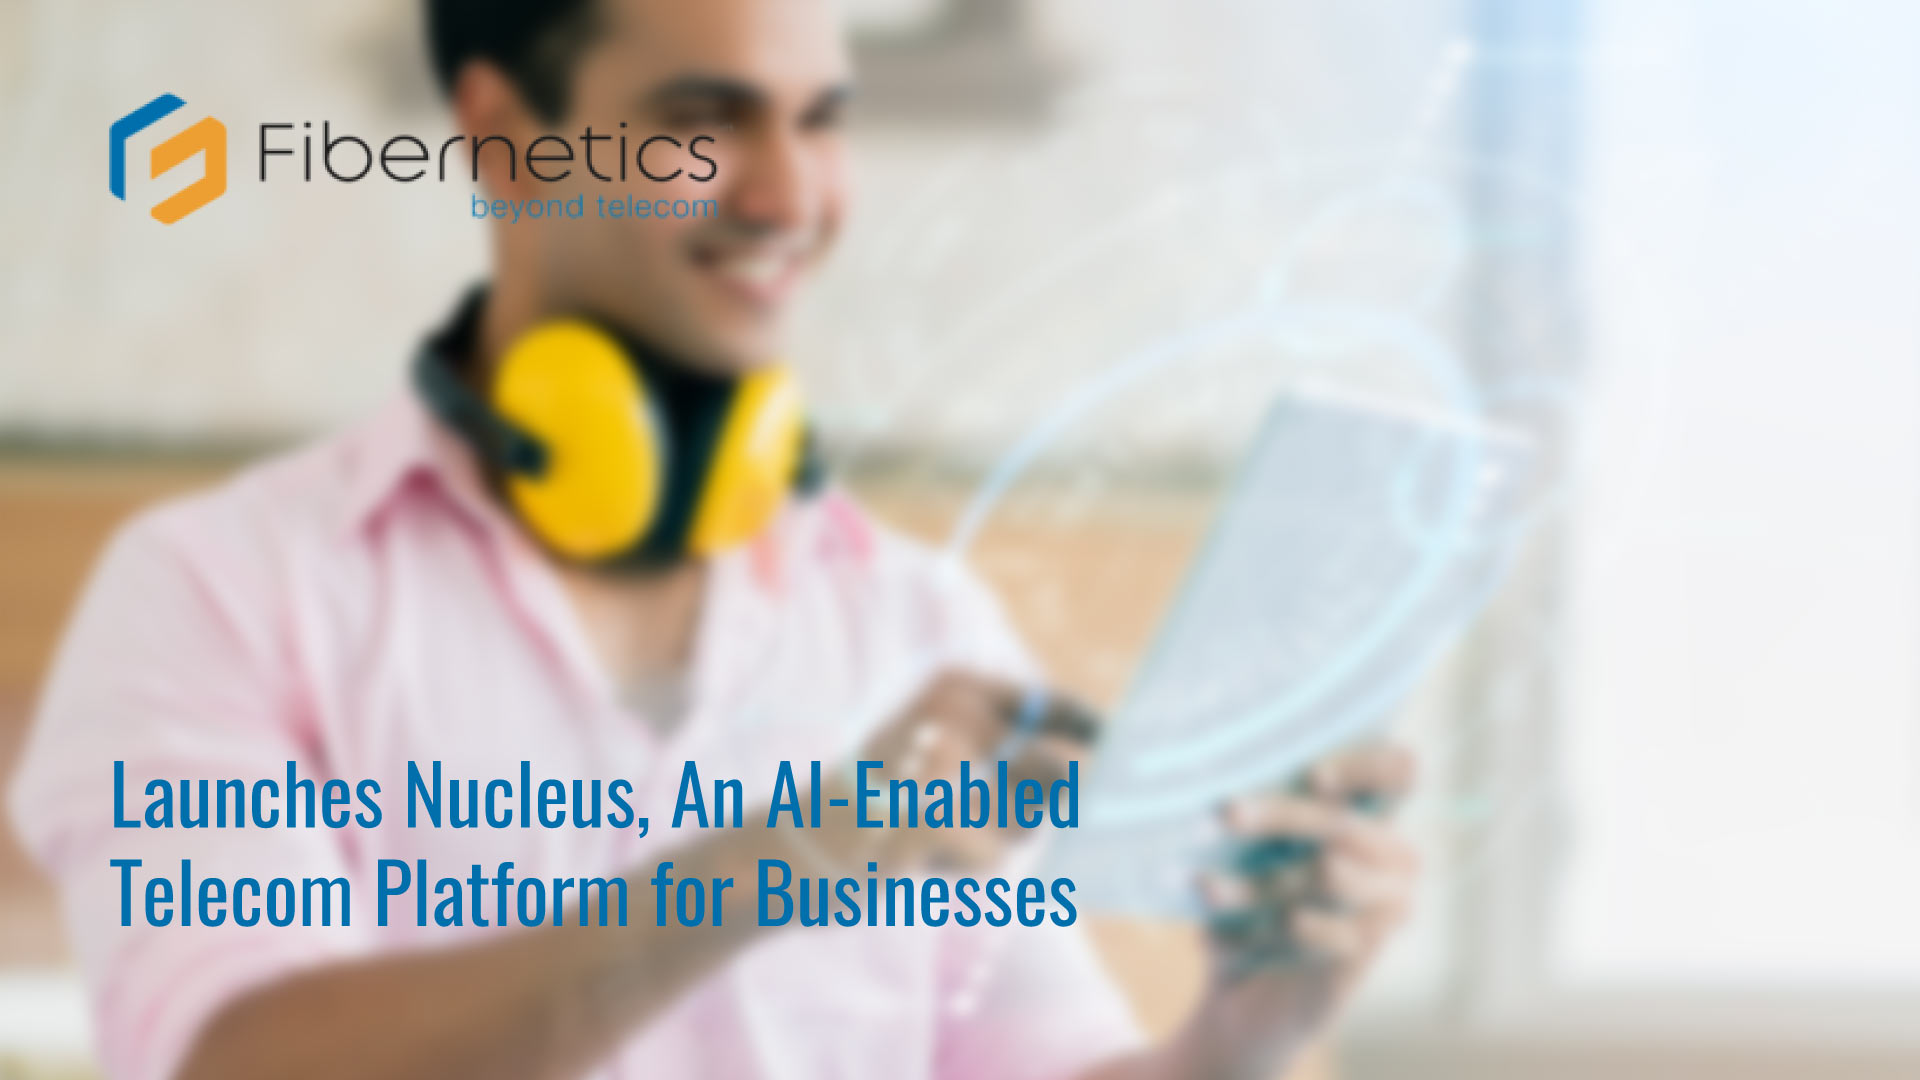 Fibernetics Launches Nucleus, An AI-Enabled Telecom Platform for Businesses